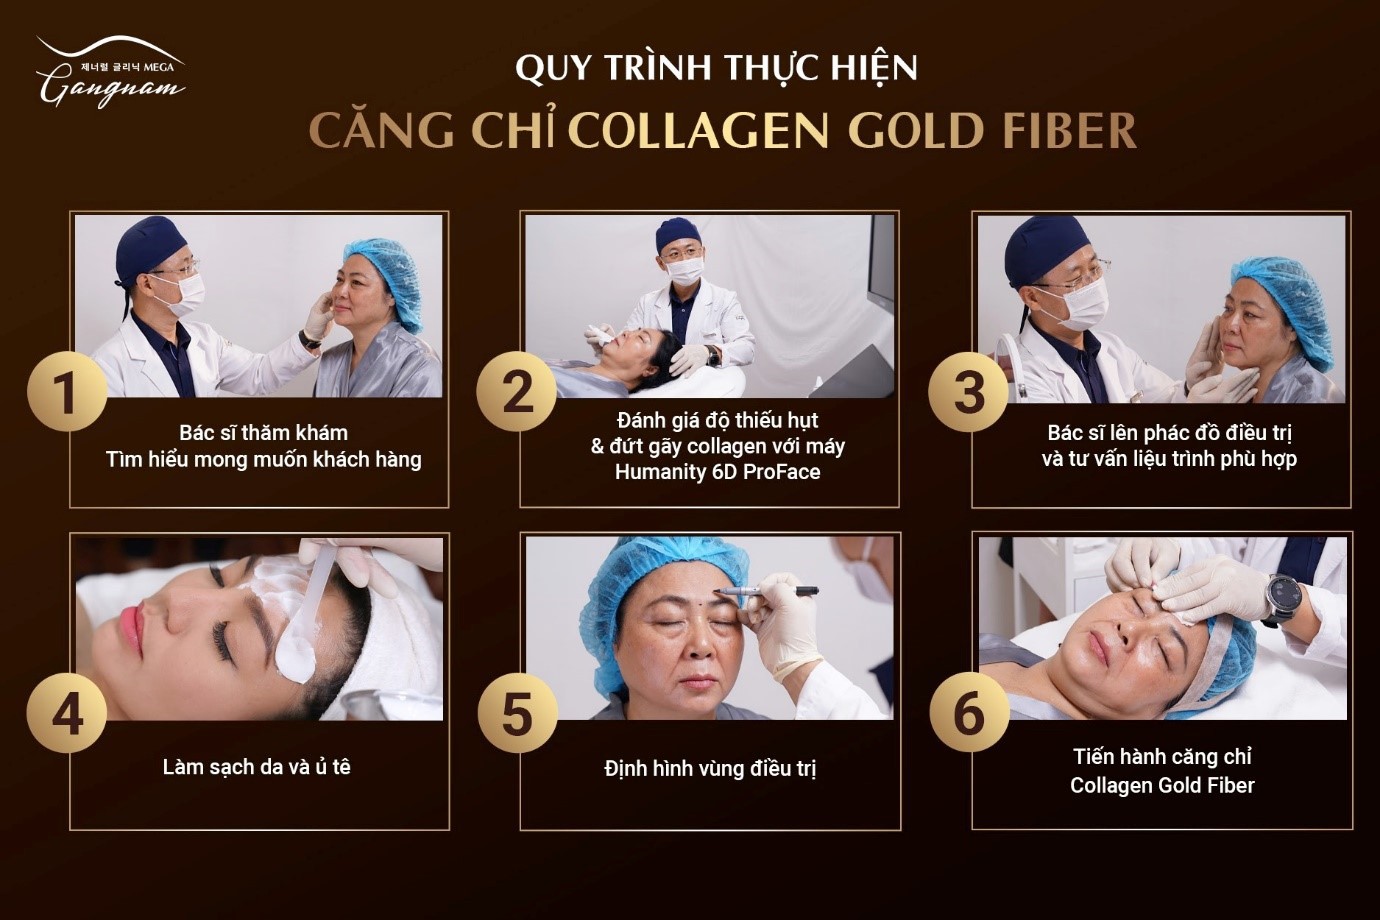 Quy trình thực hiện căng chỉ Collagen Gold Fiber tại Mega Gangnam